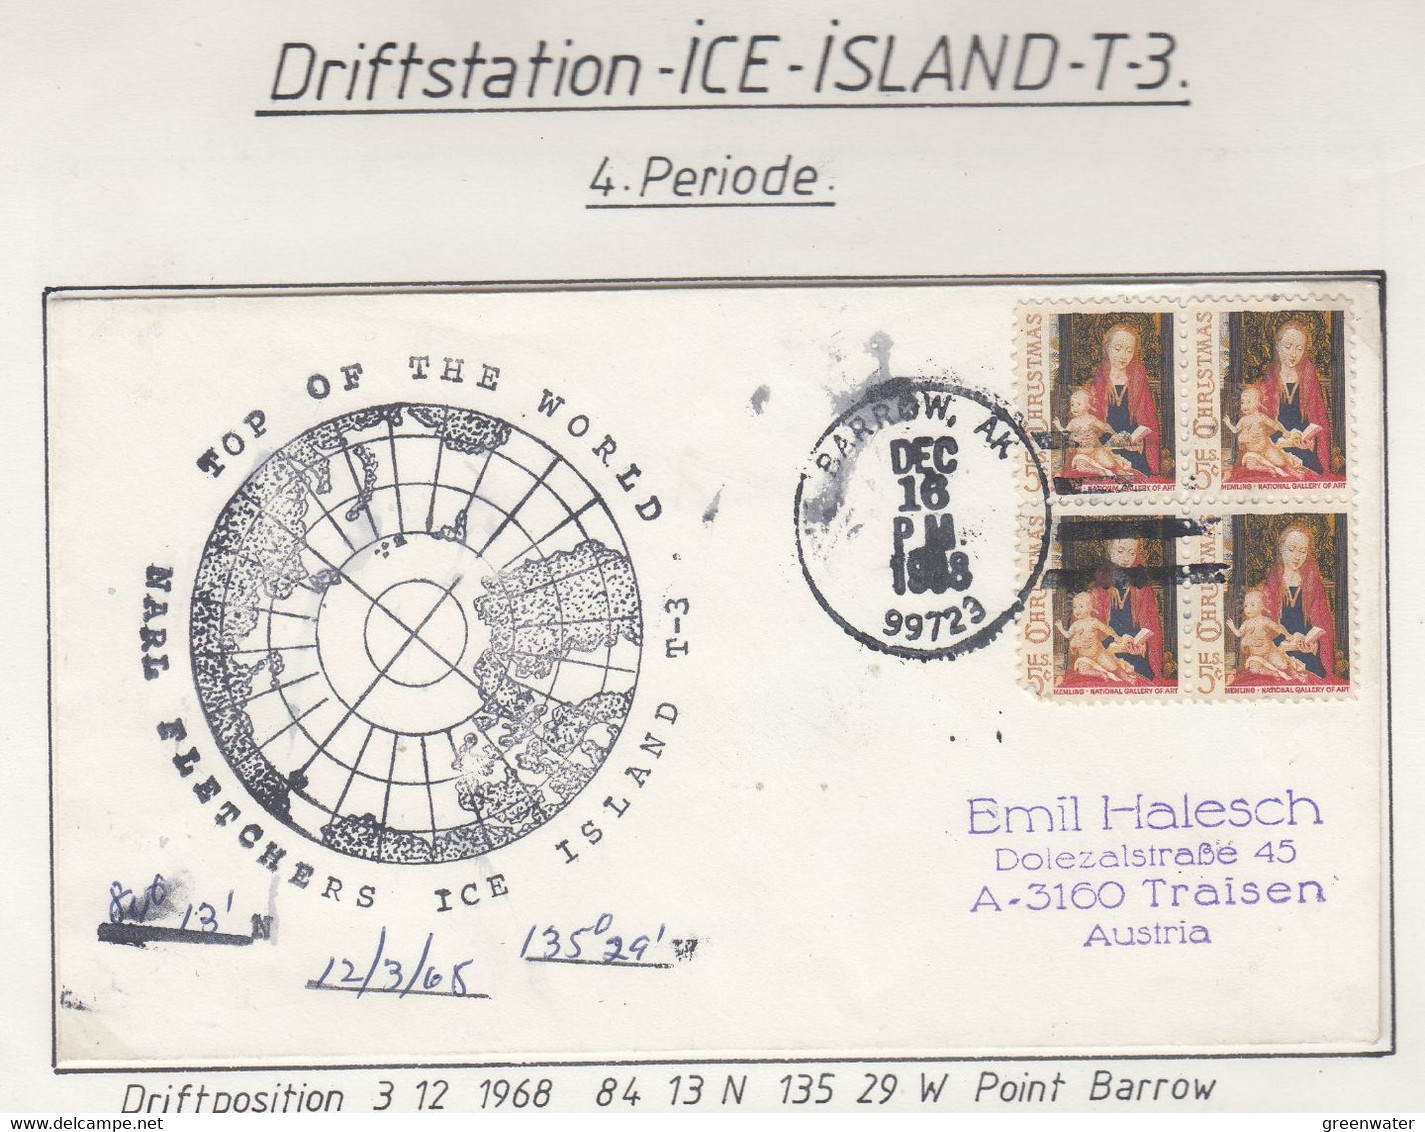 USA Driftstation ICE-ISLAND T-3 Cover Ca Fletcher's Ice Island T-3 Periode 4 Ca  DEC 16 1968 (DR128) - Forschungsstationen & Arctic Driftstationen